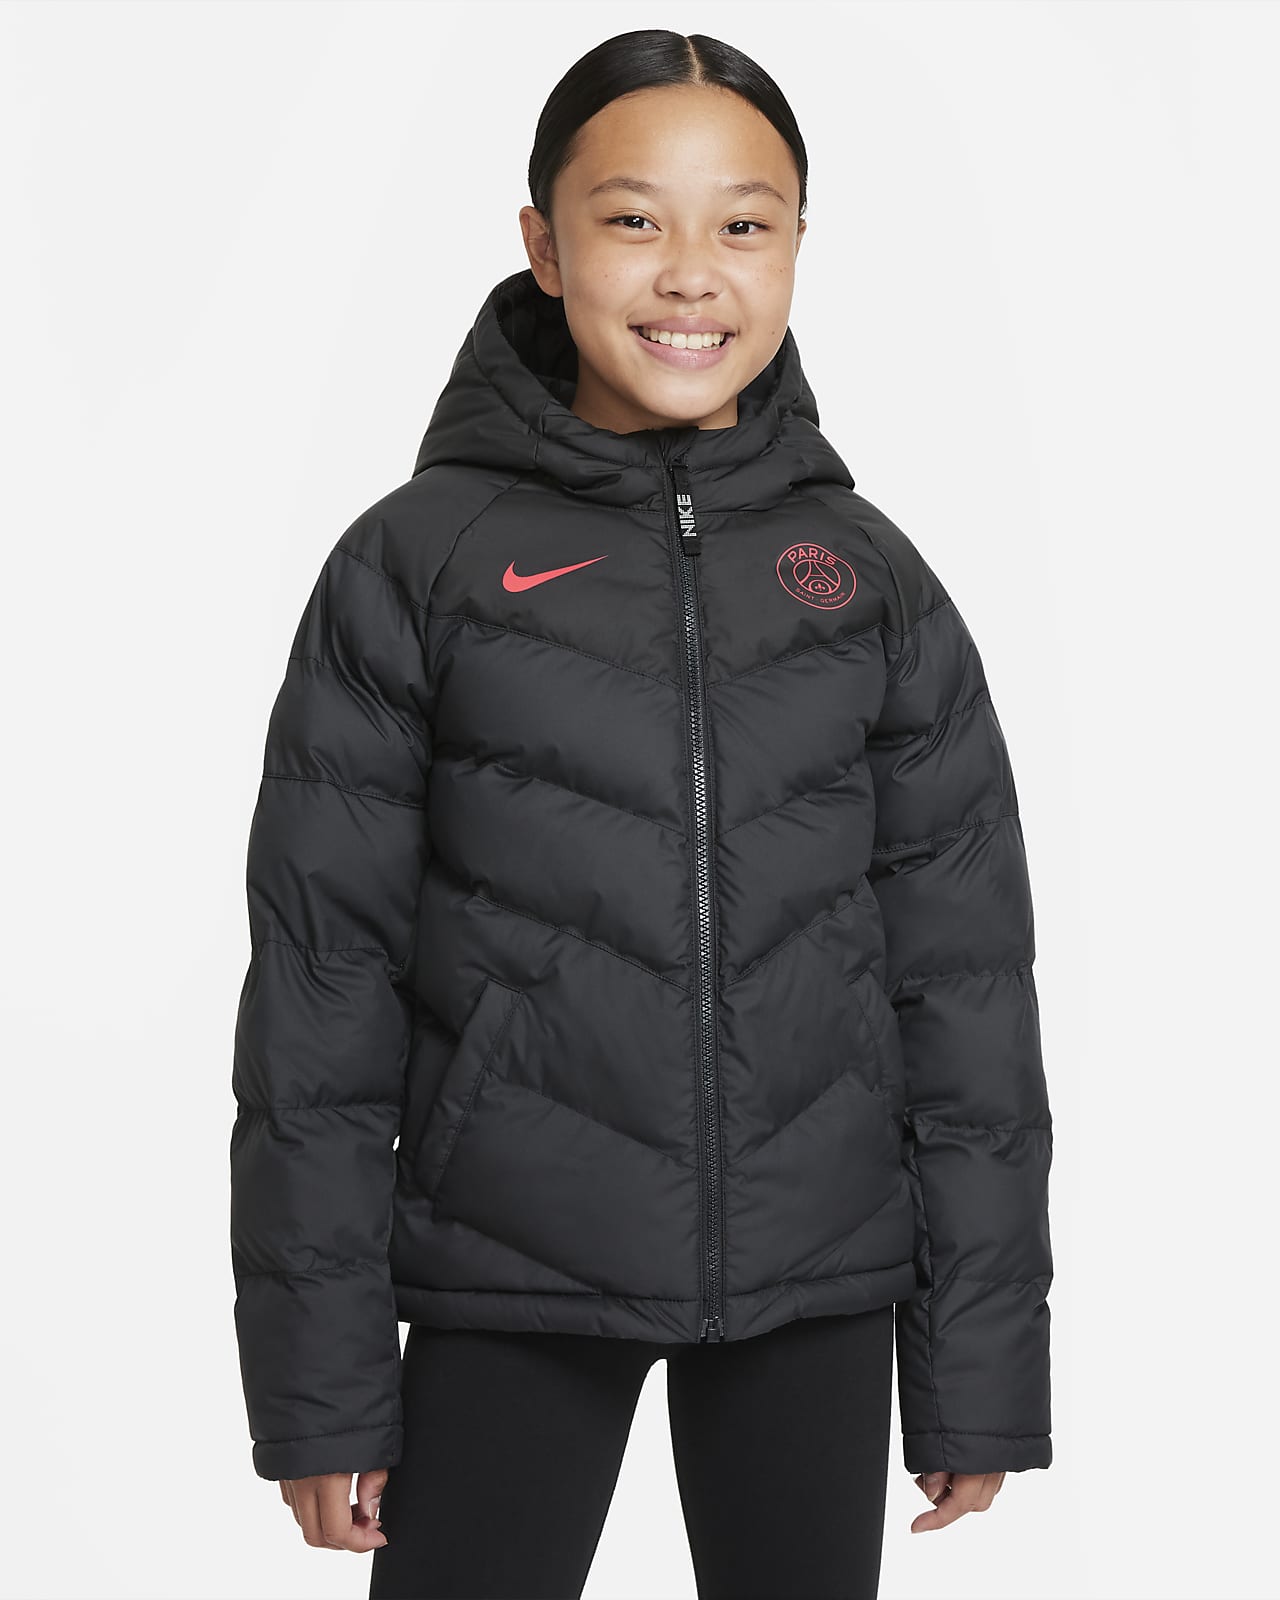 Nike Sportswear París Saint-Germain Chaqueta - Niño/a